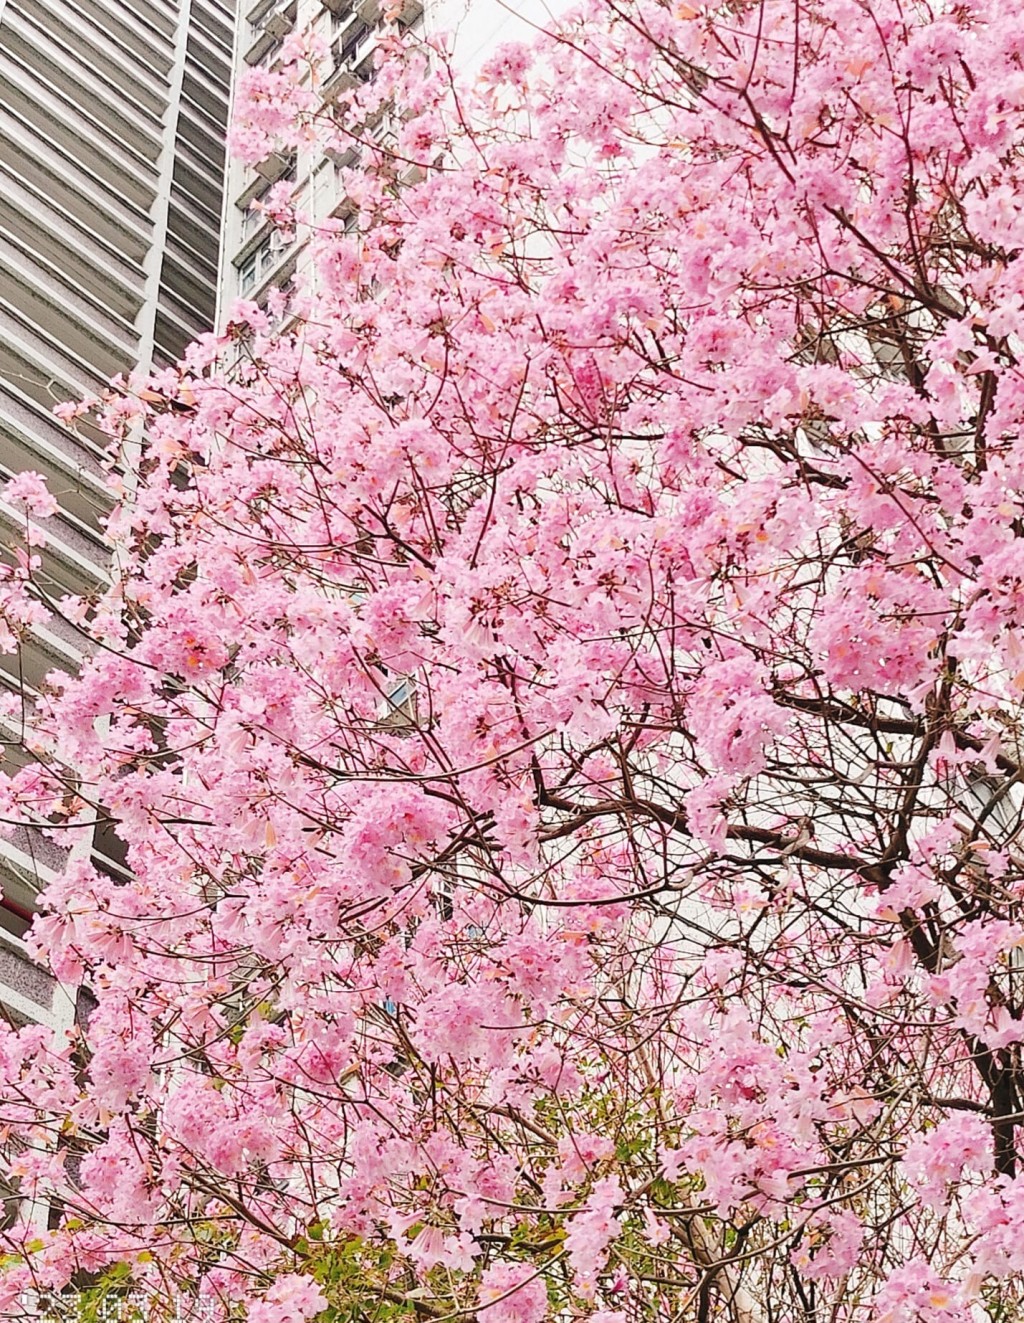 葵芳邨每年都會有紅花風鈴木盛放。（圖片來源：FB@香港風景分享組 Ada Hung 授權）